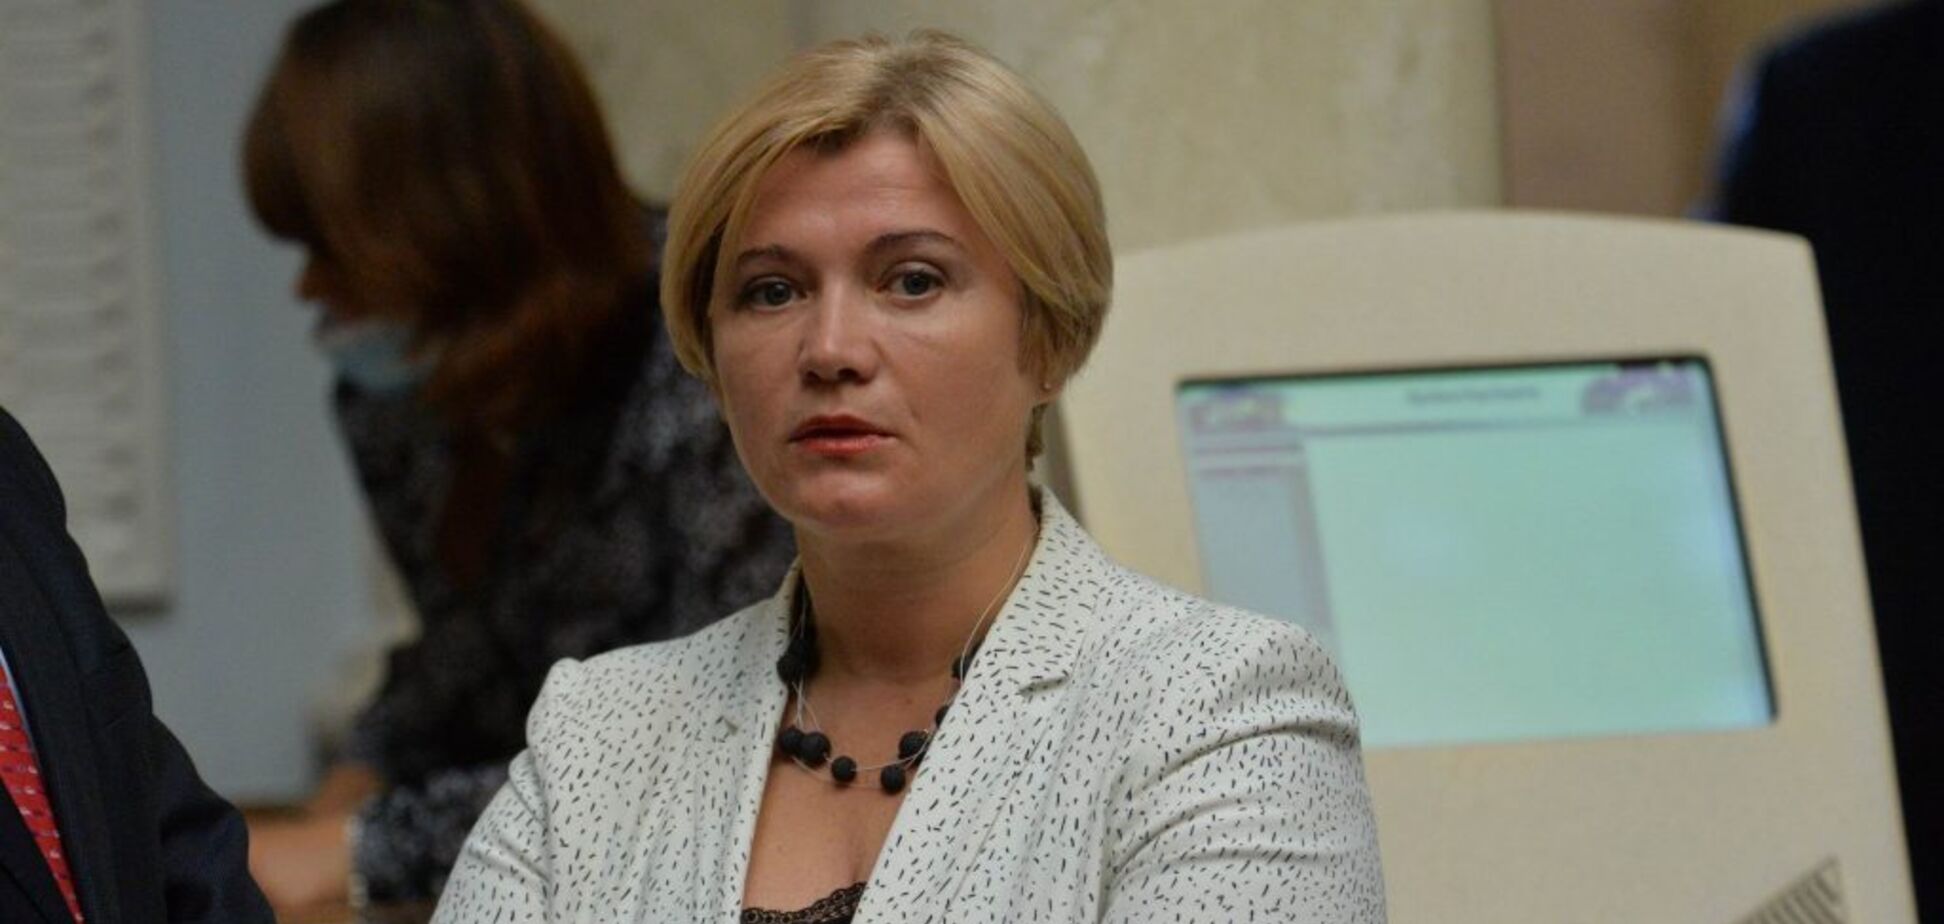 Треба негайно повернути парламентський контроль, 'Прозорро' і створити ТСК щодо закупівель для армії, – Ірина Геращенко